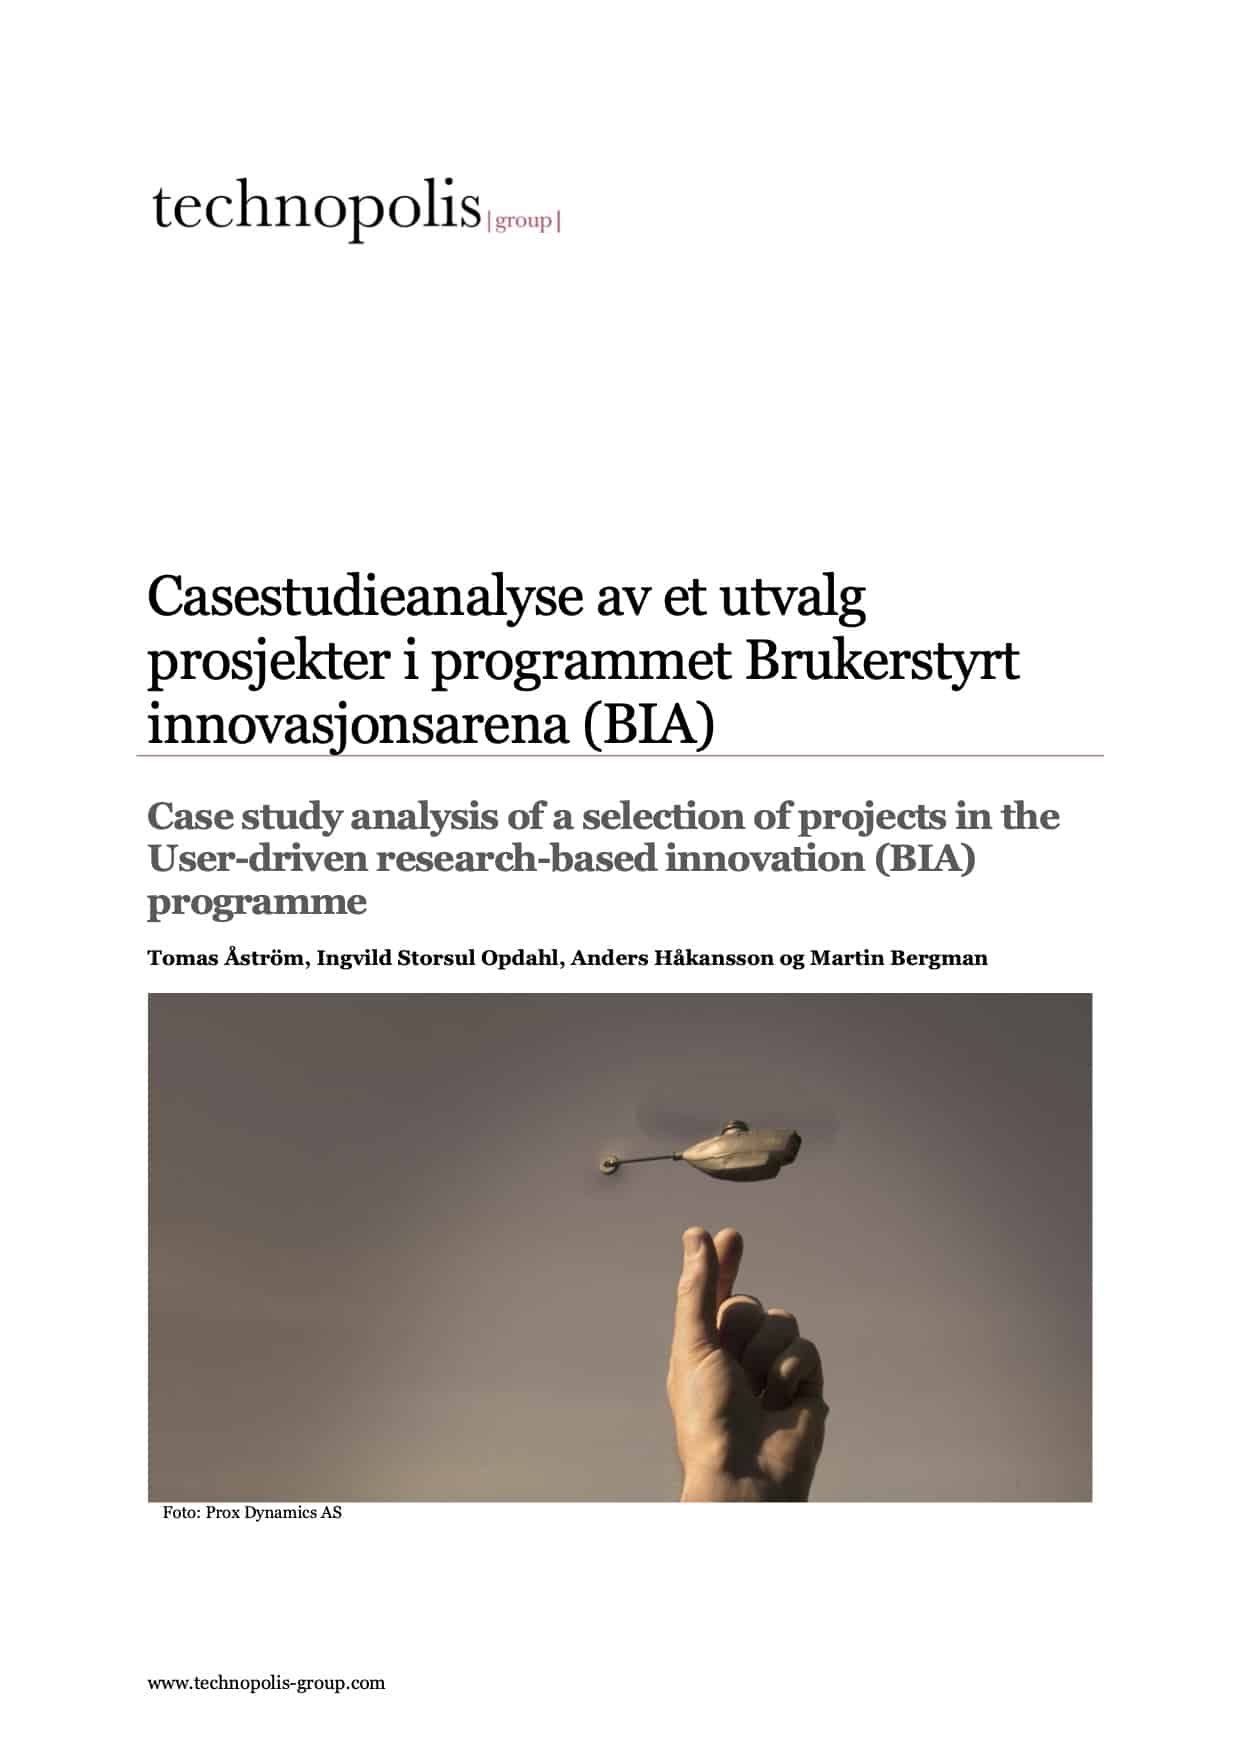 Casestudieanalyse av et utvalg prosjekter i programmet Brukerstyrt innovasjonsarena (BIA)